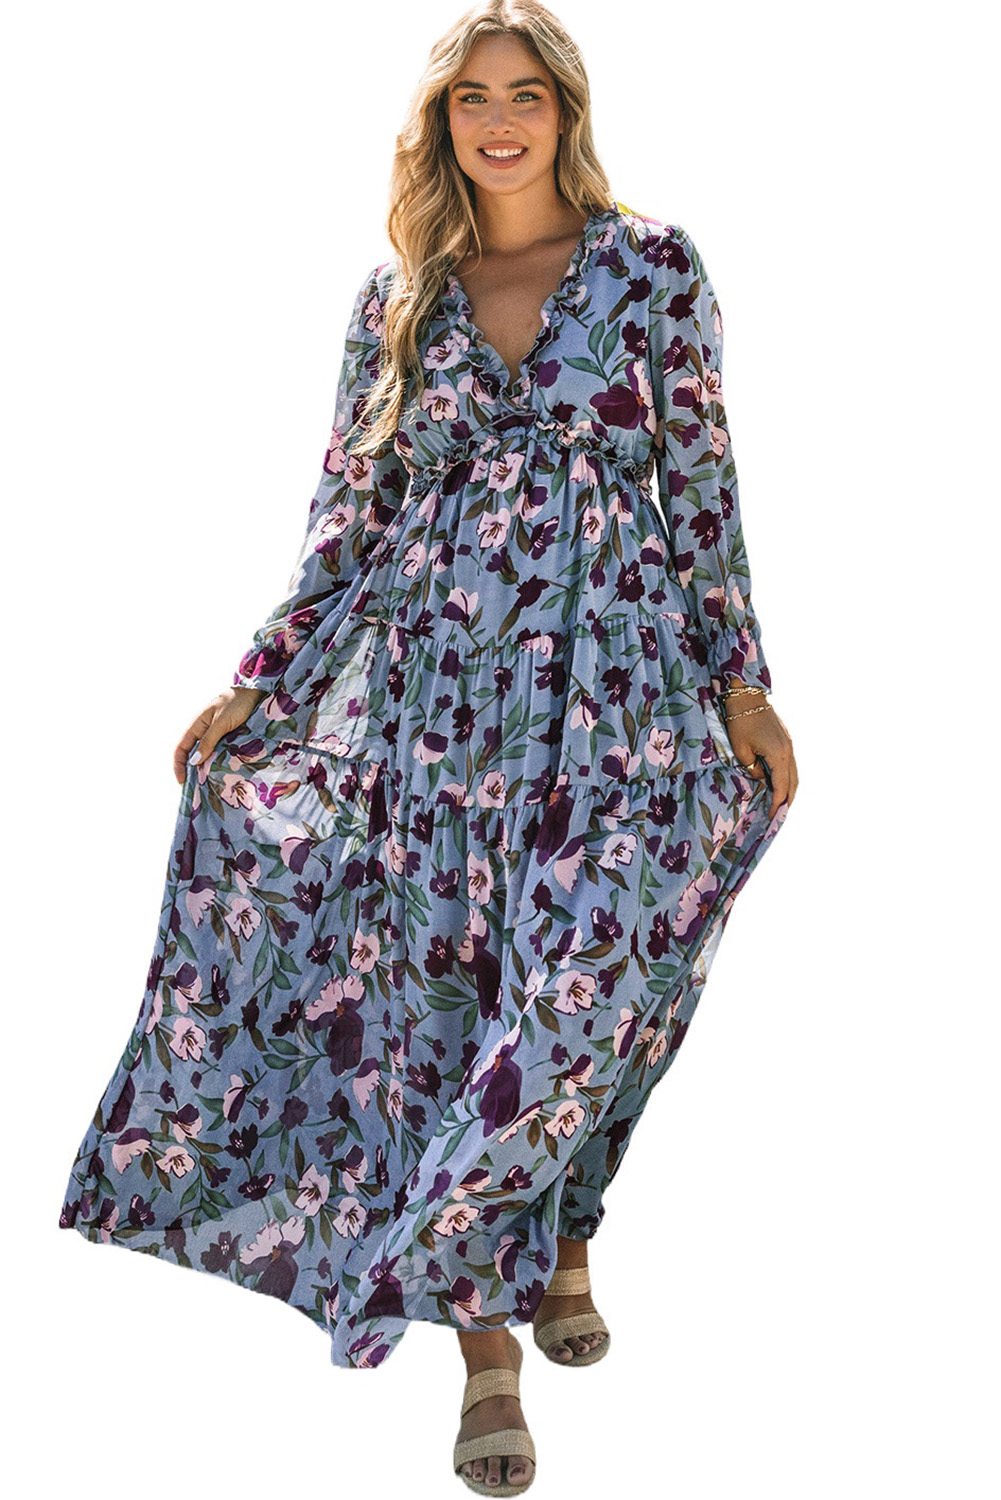 US$ 14.84 Drop-shipping Wild Lotus Ruffle Tiered Maxi Dress for Women